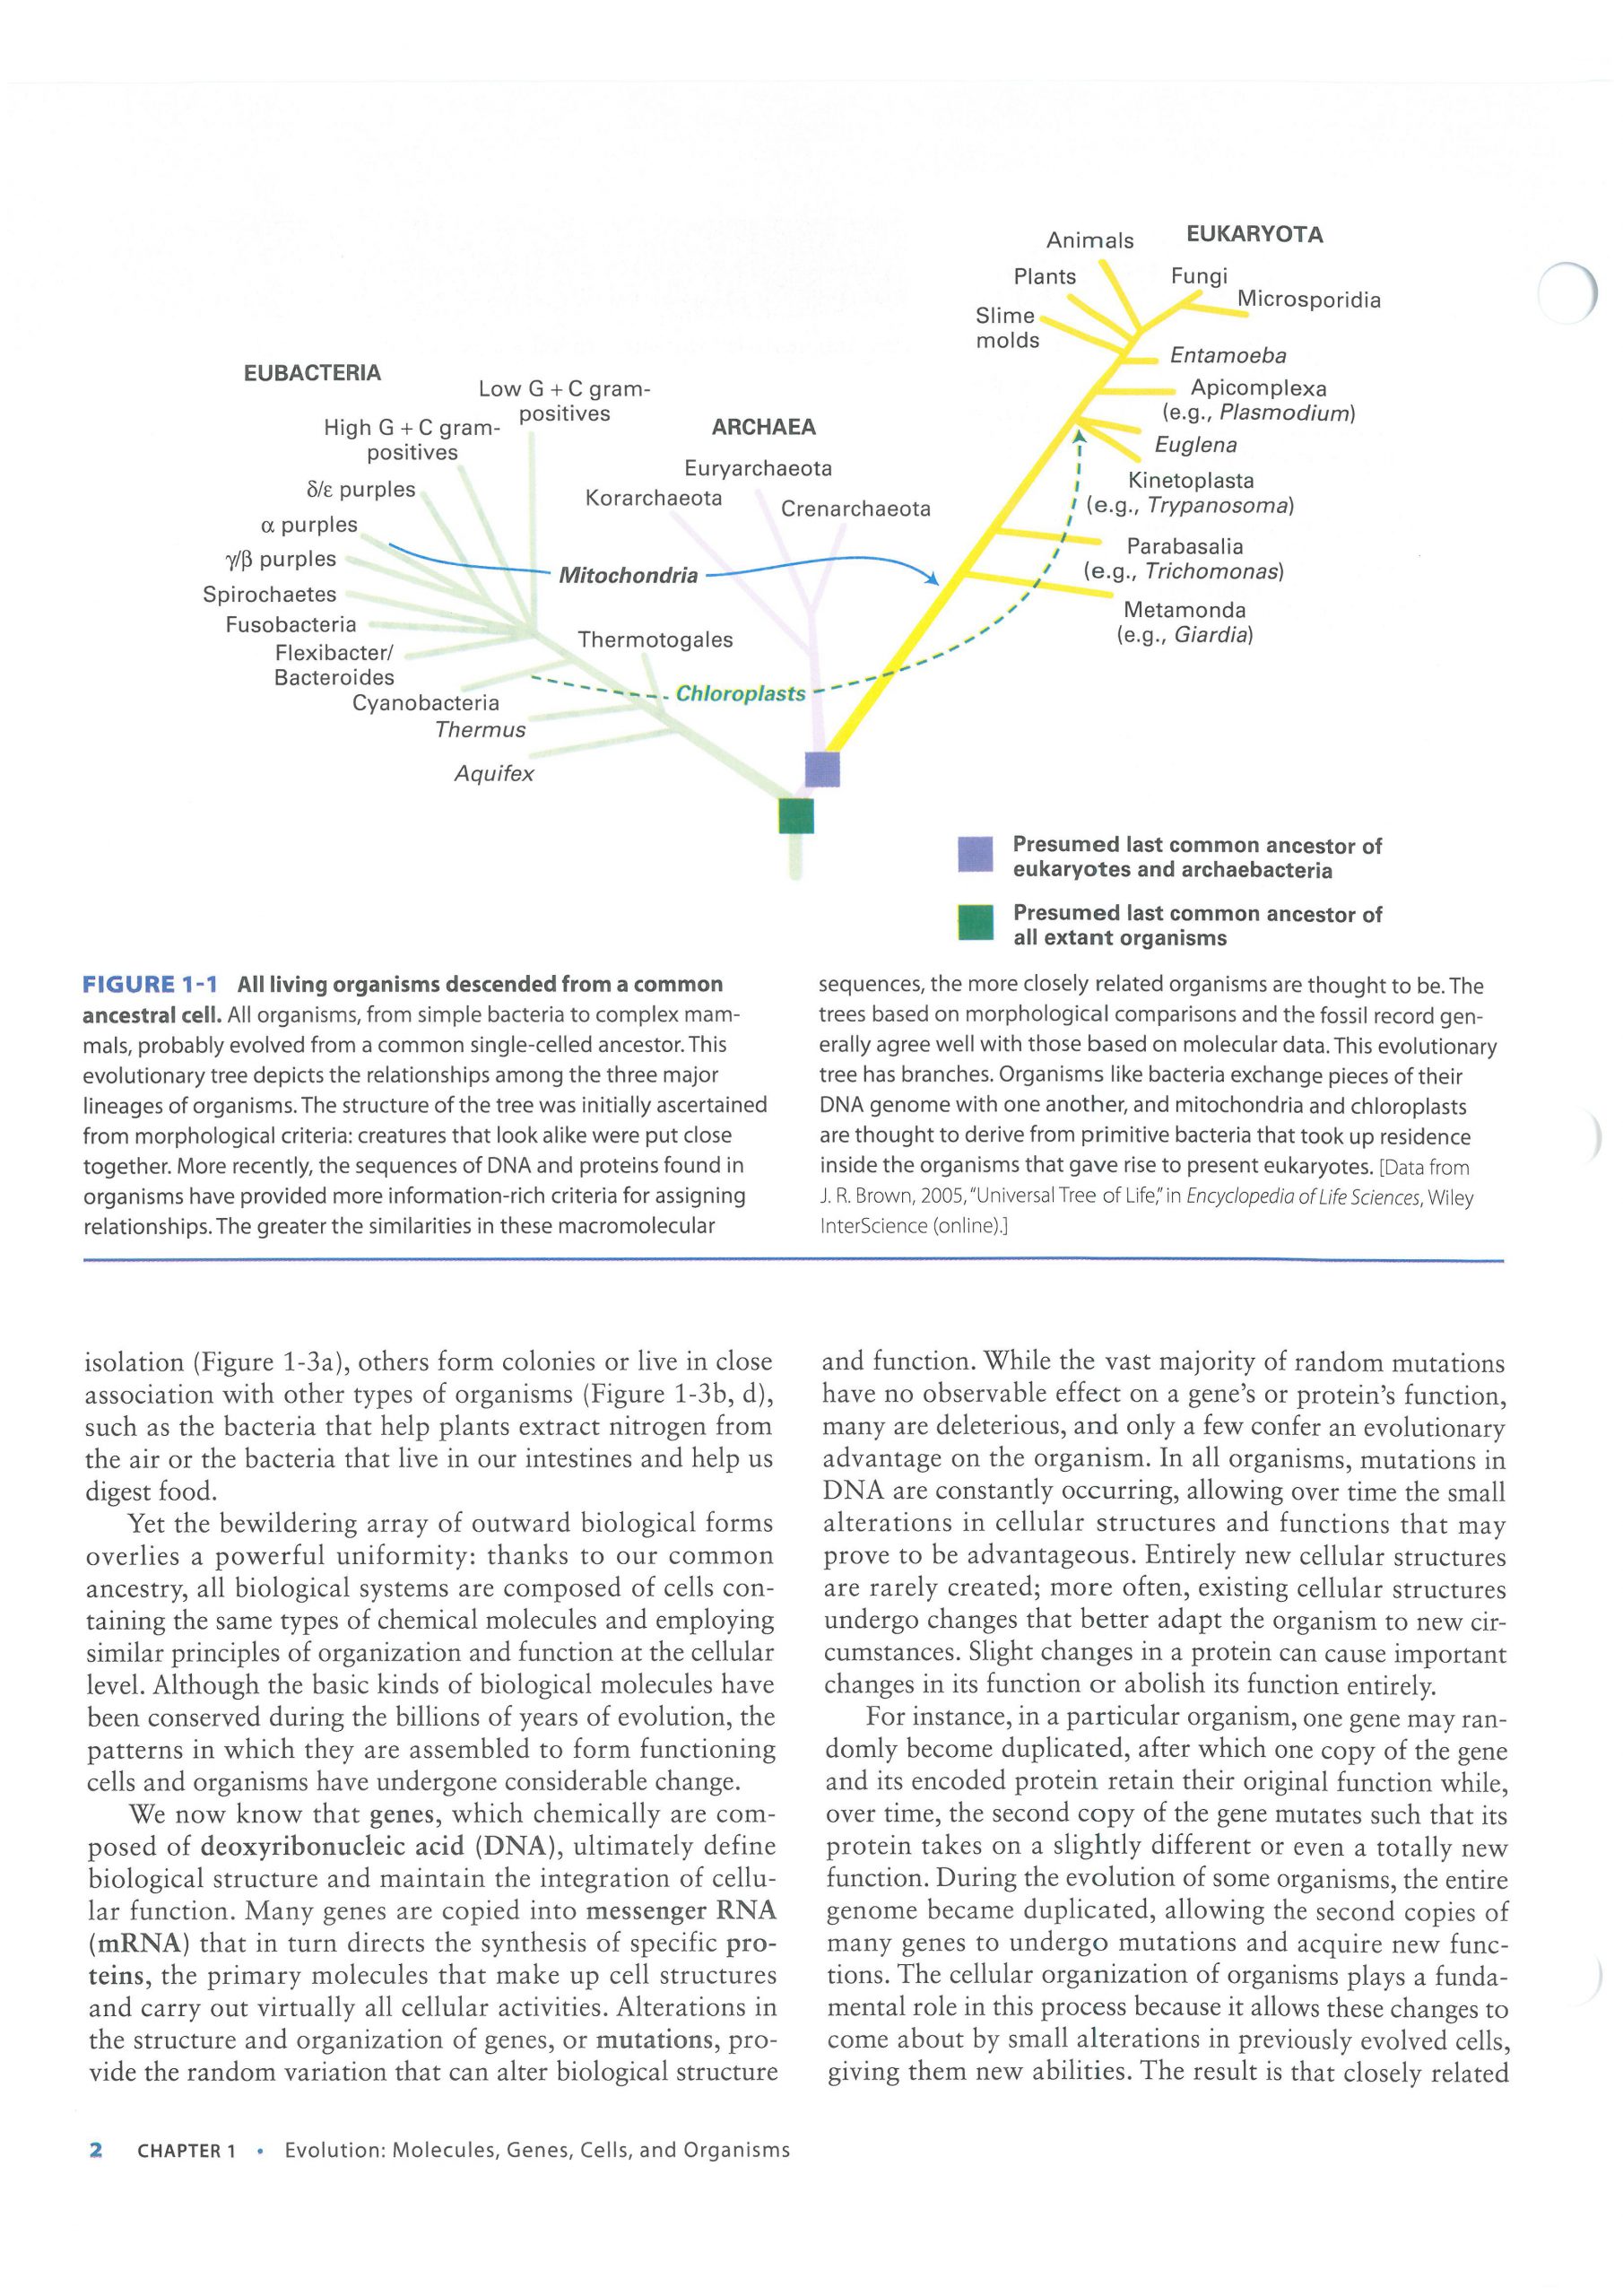 کتاب افست زیست شناسی لودیش - بیولوژی لودیش 2021 | تمام رنگی - کاغذ تحریر